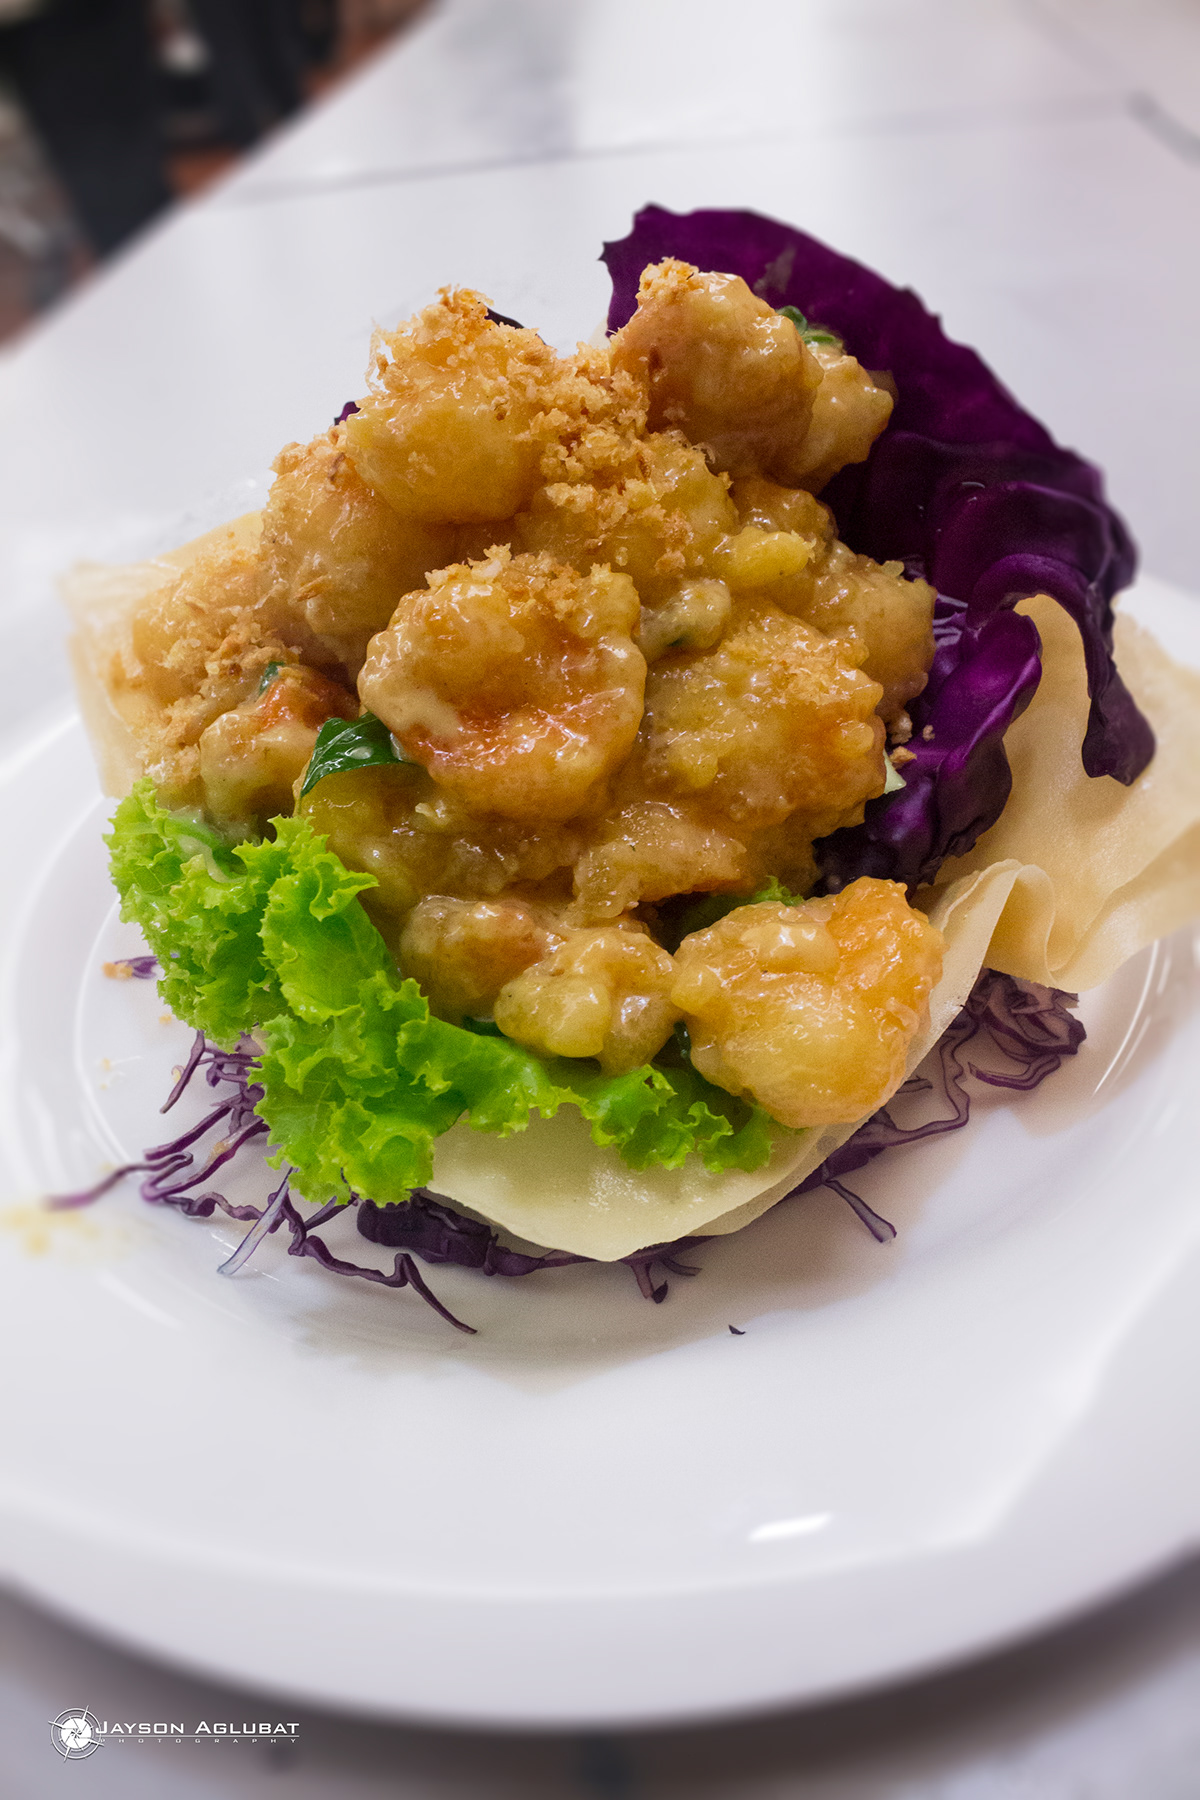 seabass prawn buttered prawn chinese cuisine sweet_and_sour salad prawn sambal wasabi prawn baby octopus chicken steamed chicken